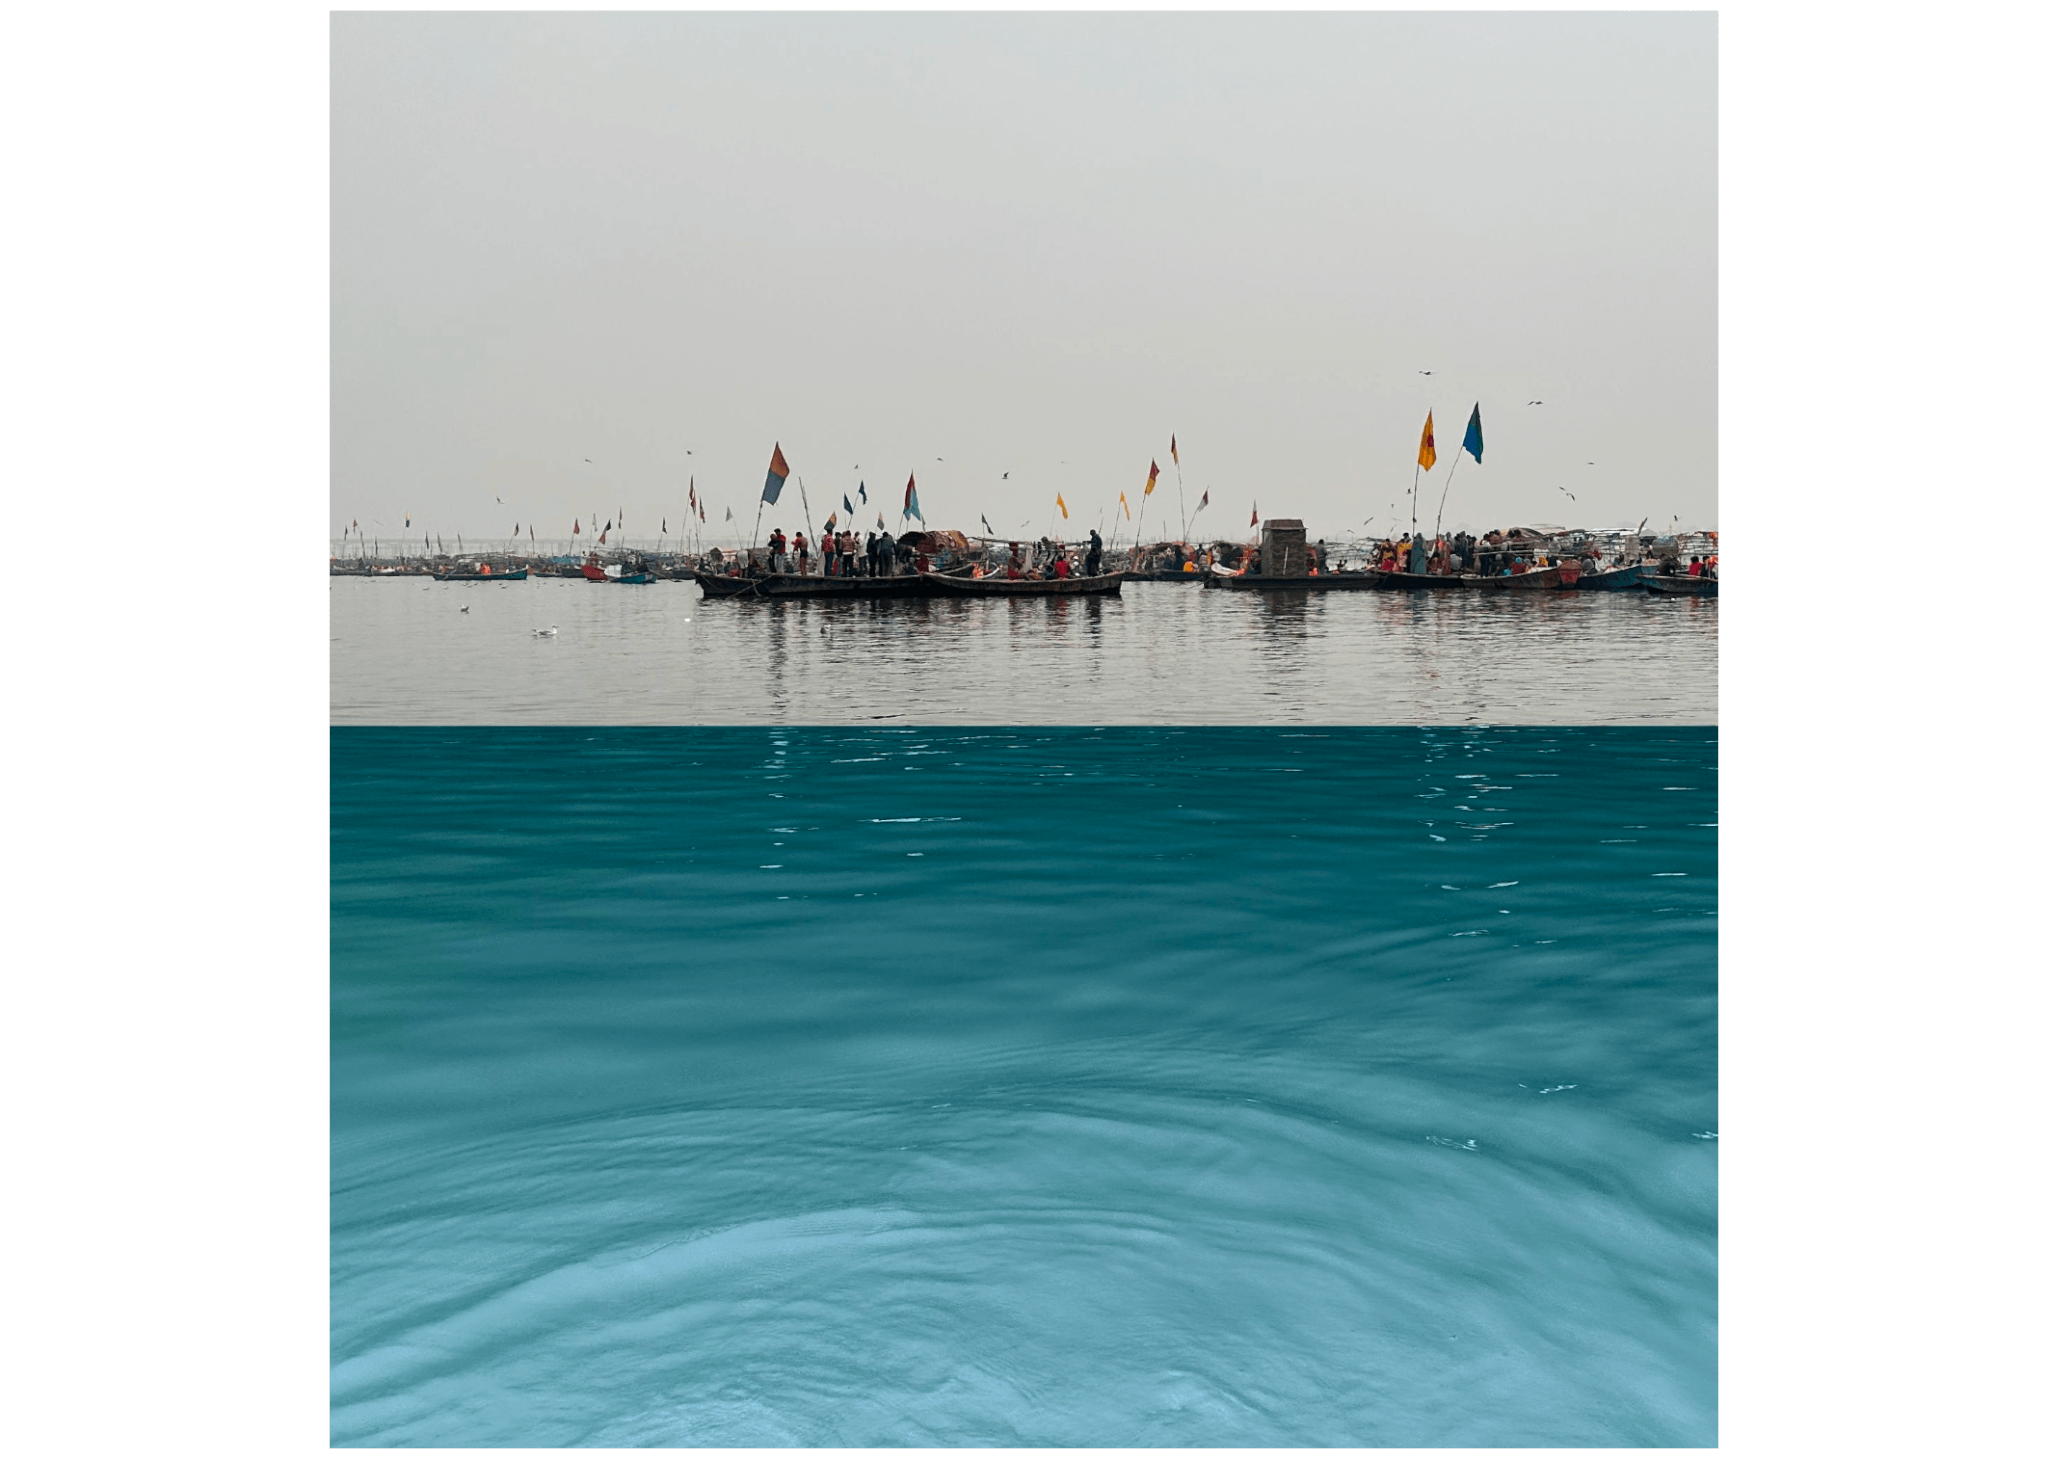 Image of " Water Stories: Triveni Sangam, Allahabad (Prayagraj), India, Jan 3, 2023" by Jinah Kim and Cara Buzzell